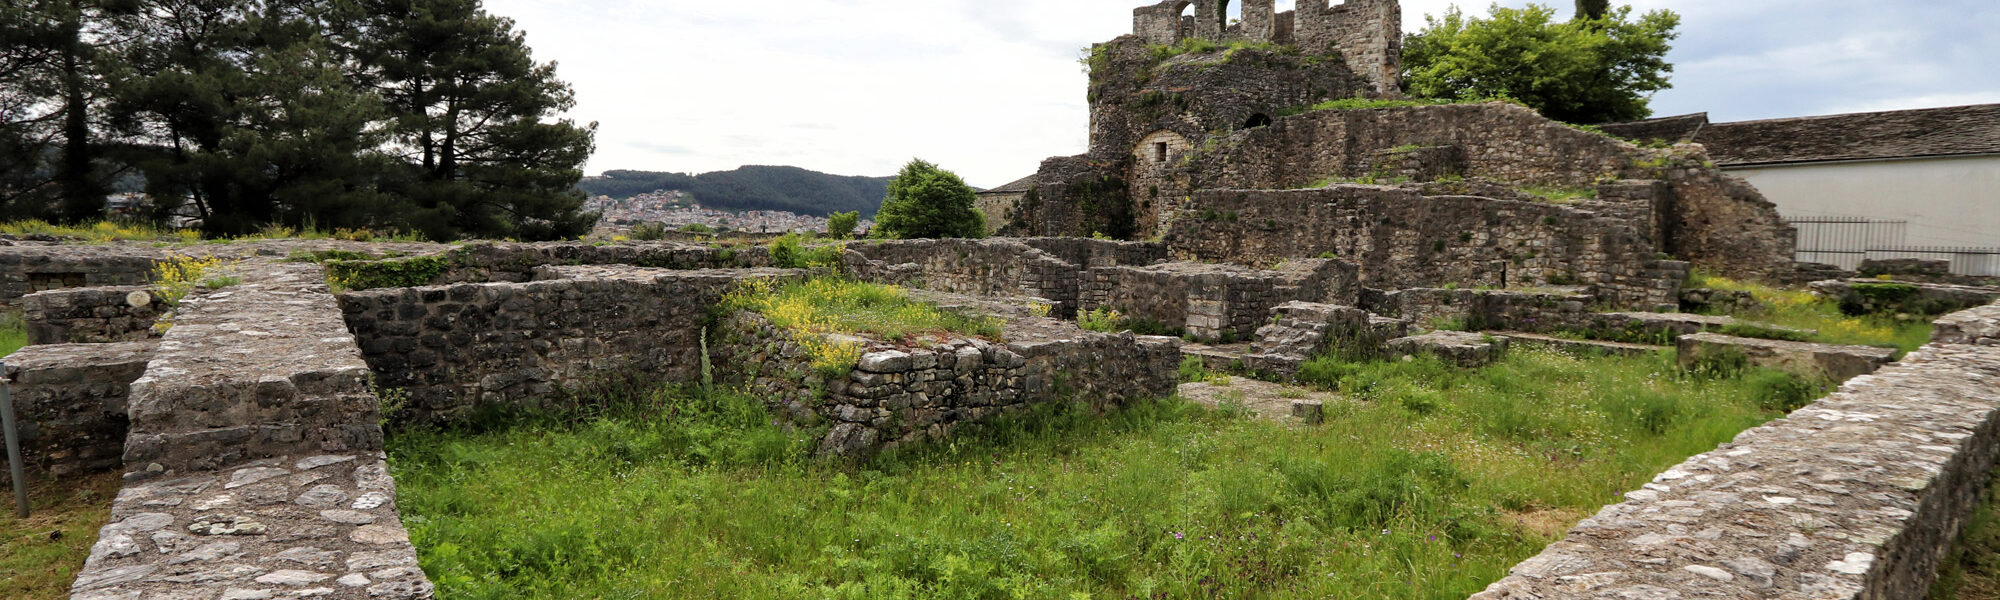 Tzoumerka - Ioannina kasteel